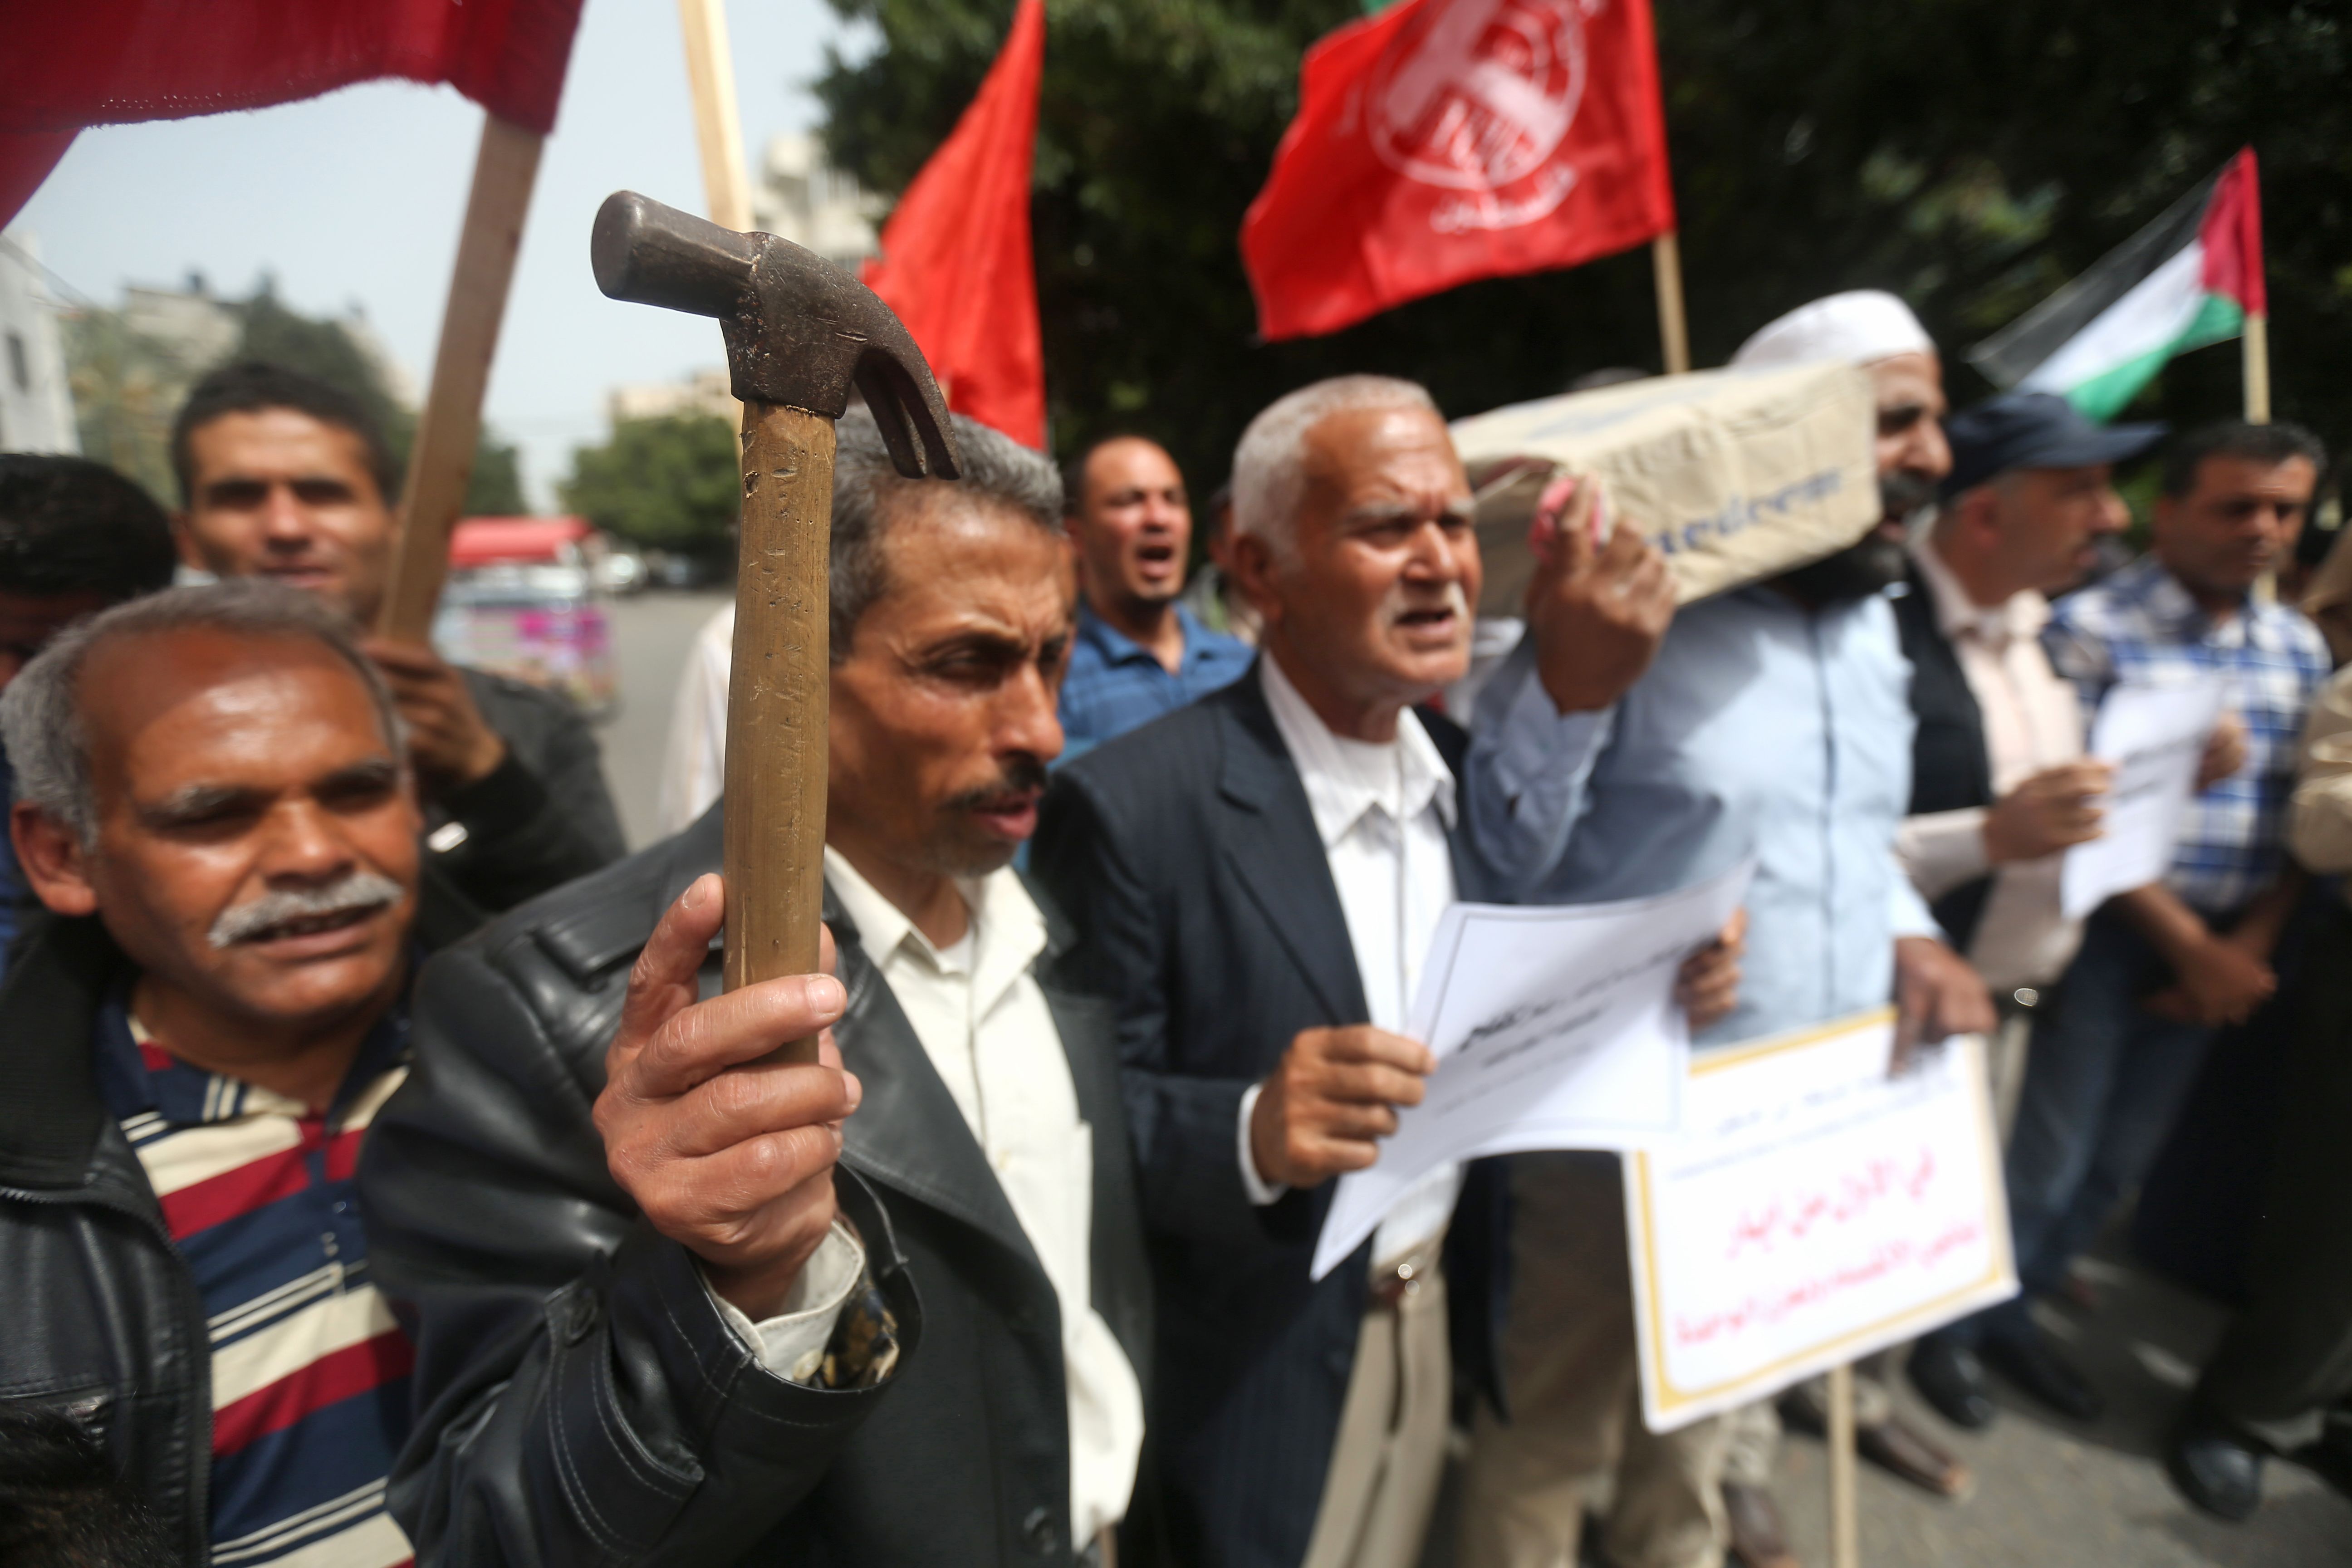 فلسطينيون يتظاهرون بالمطرقة